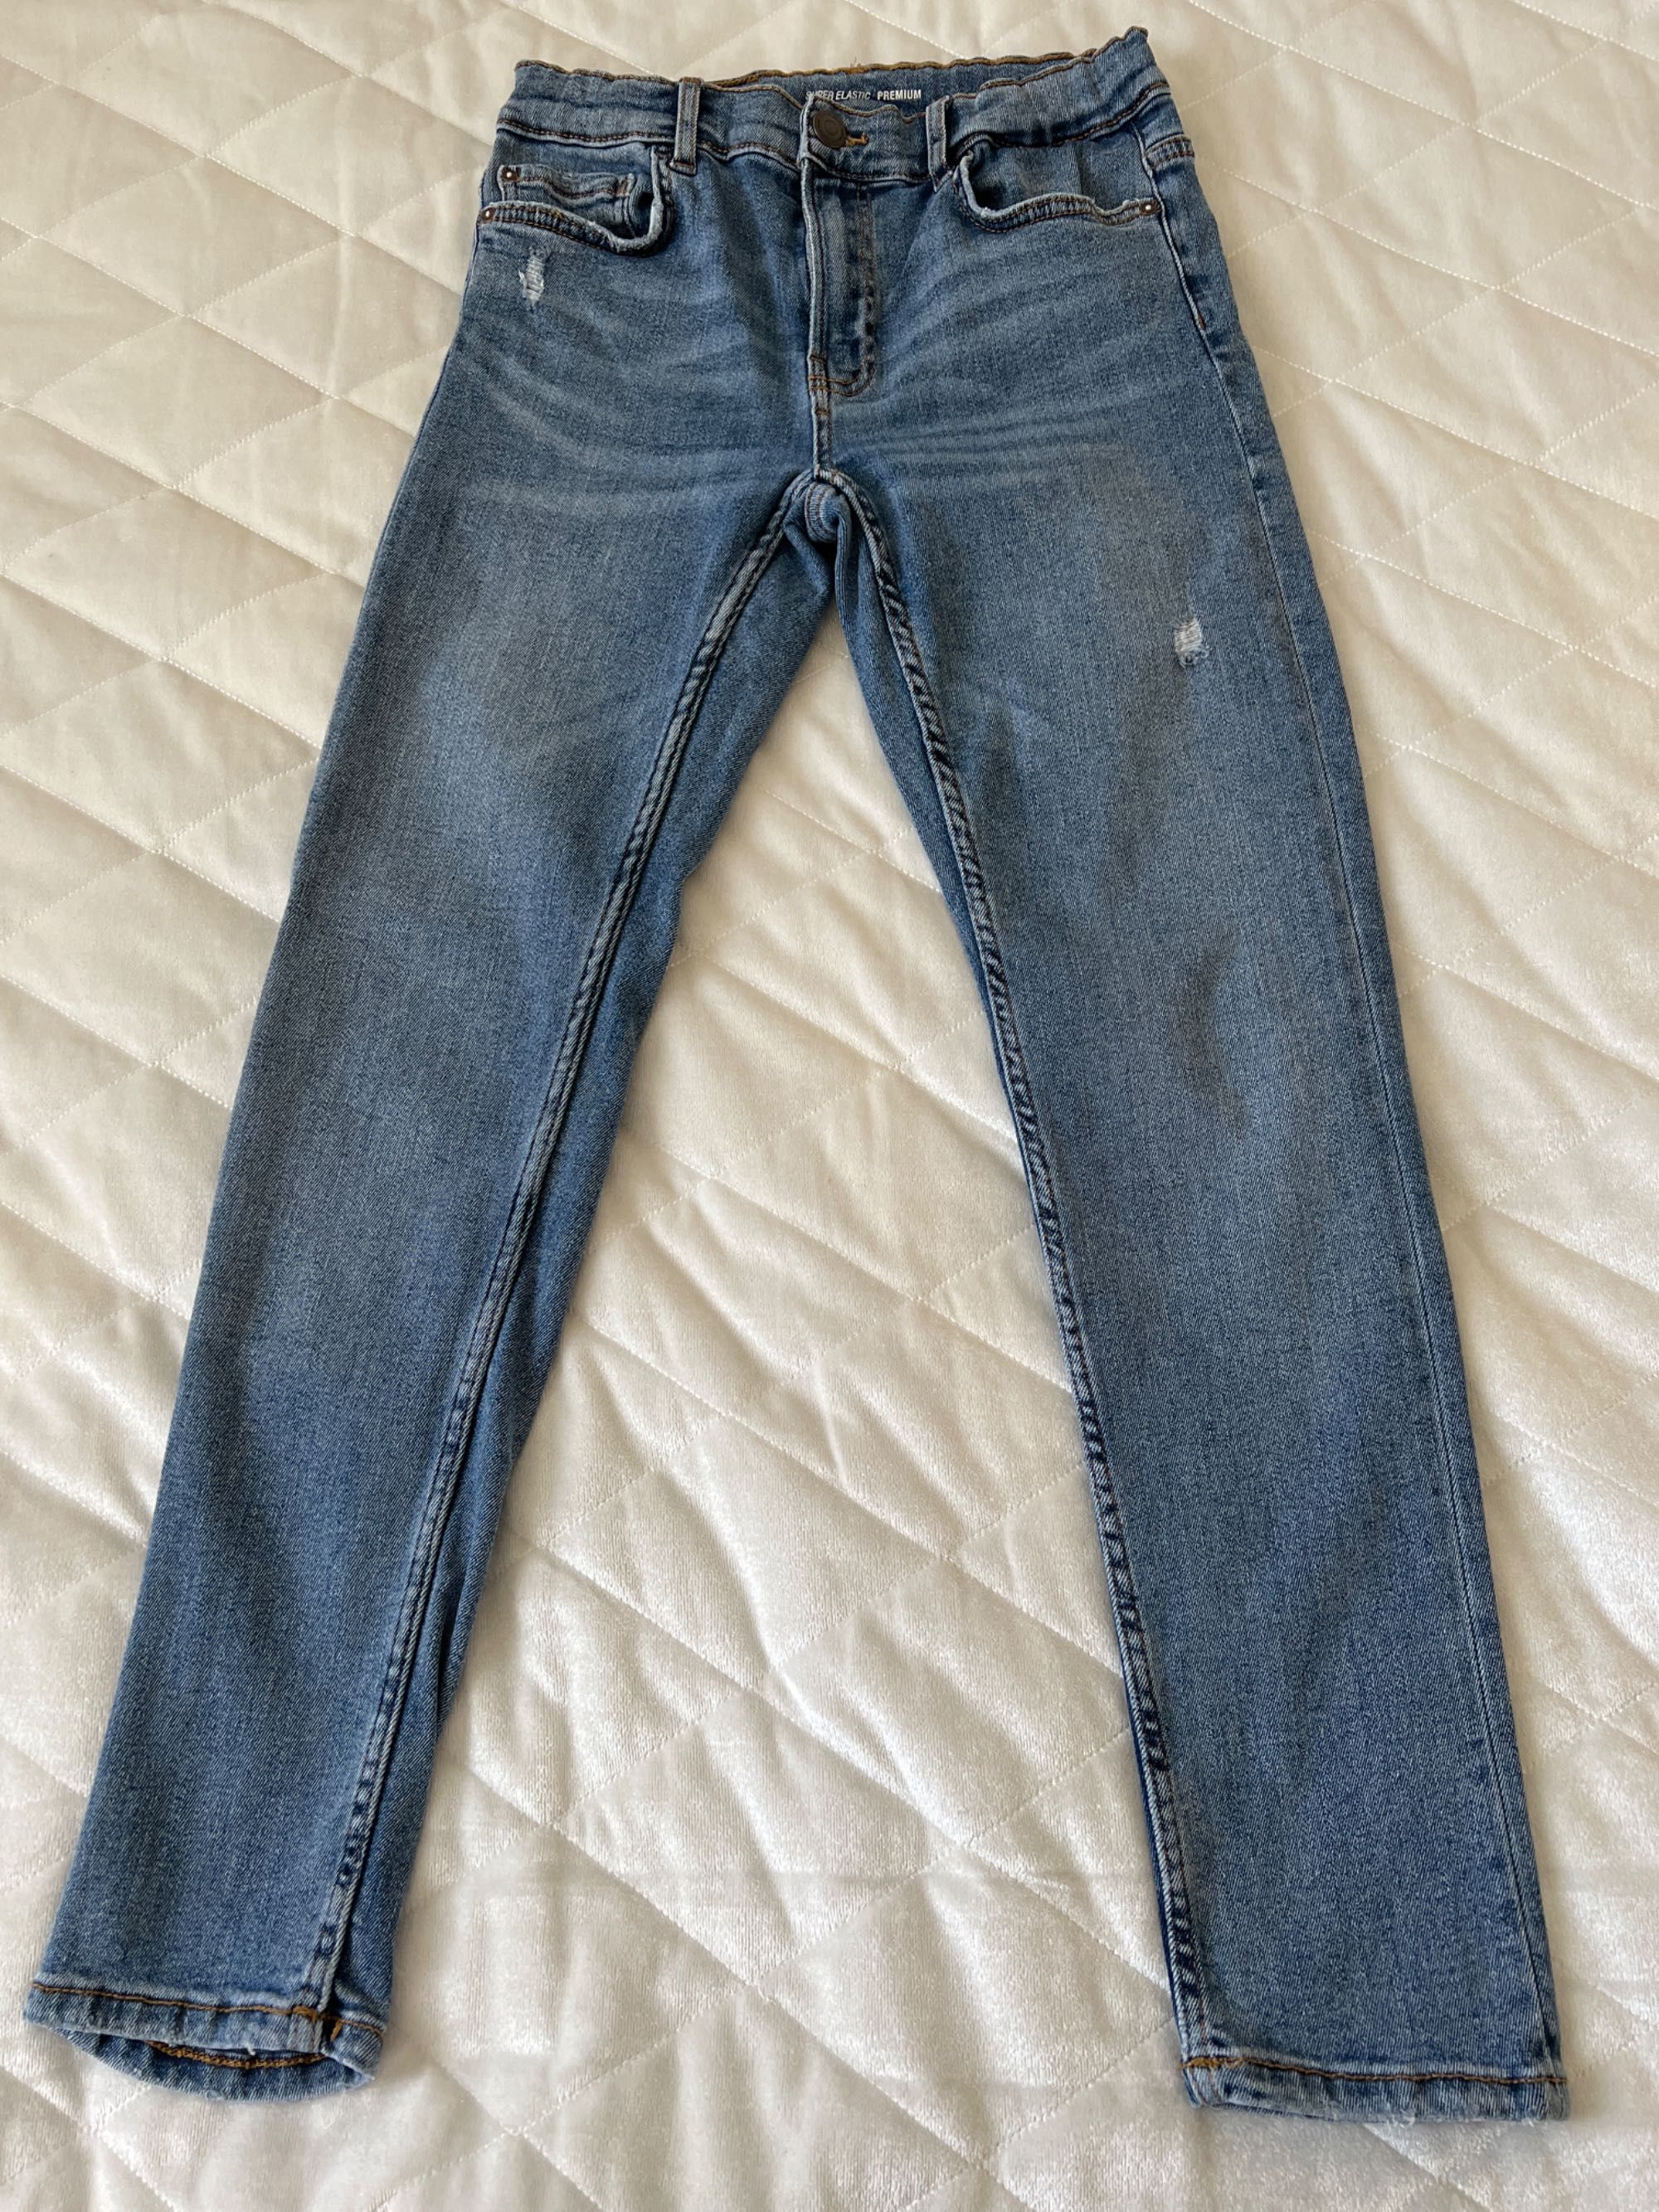 Spodnie yeansowe chłopięce, marka Zara, rozmiar 152 cm.